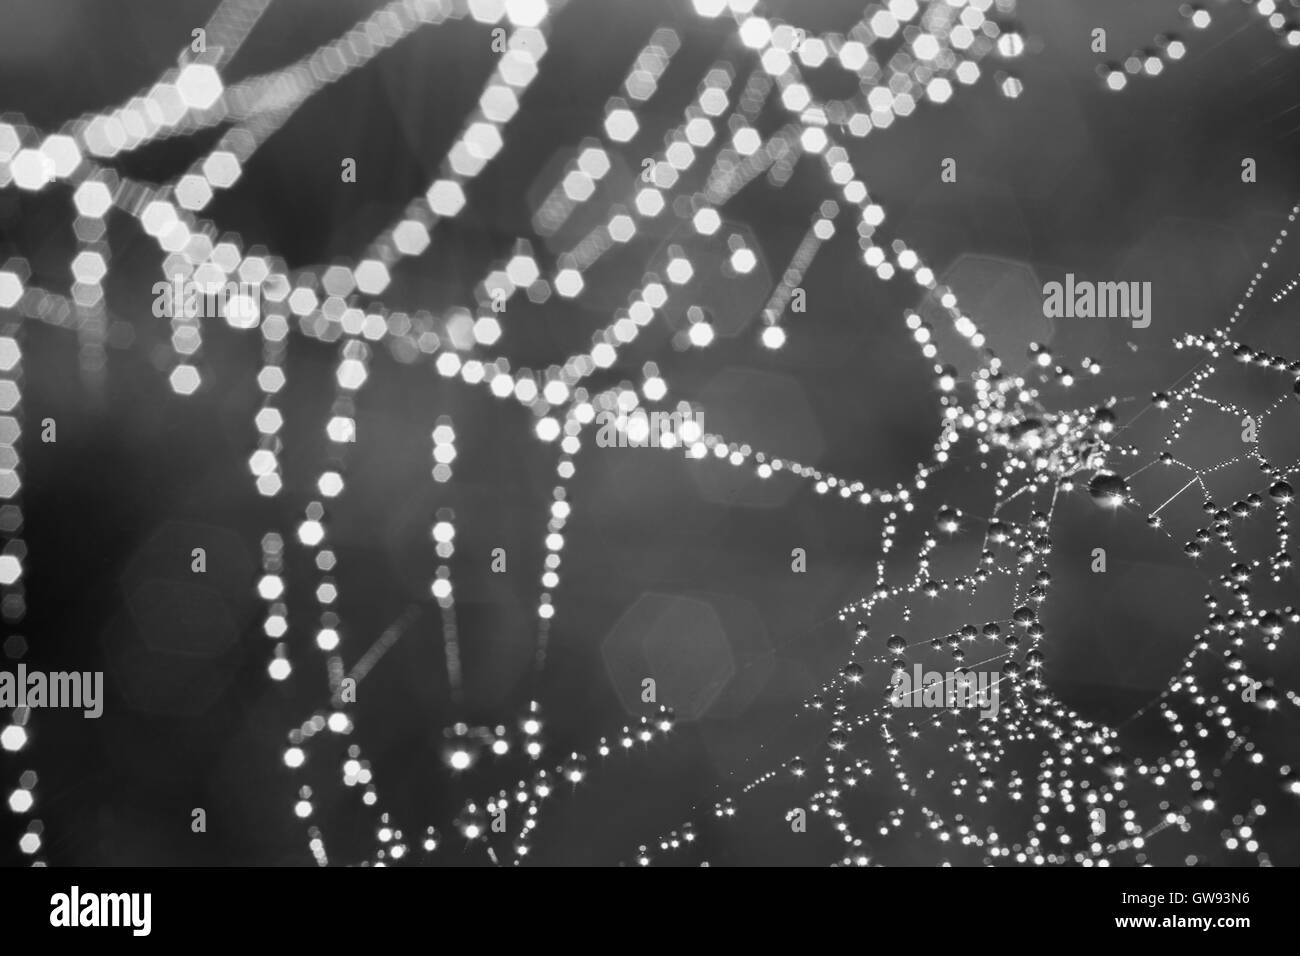 Spinnennetz mit Tautropfen Tropfen Makro. Tiefenschärfe, schwarz / weiß Bild Stockfoto